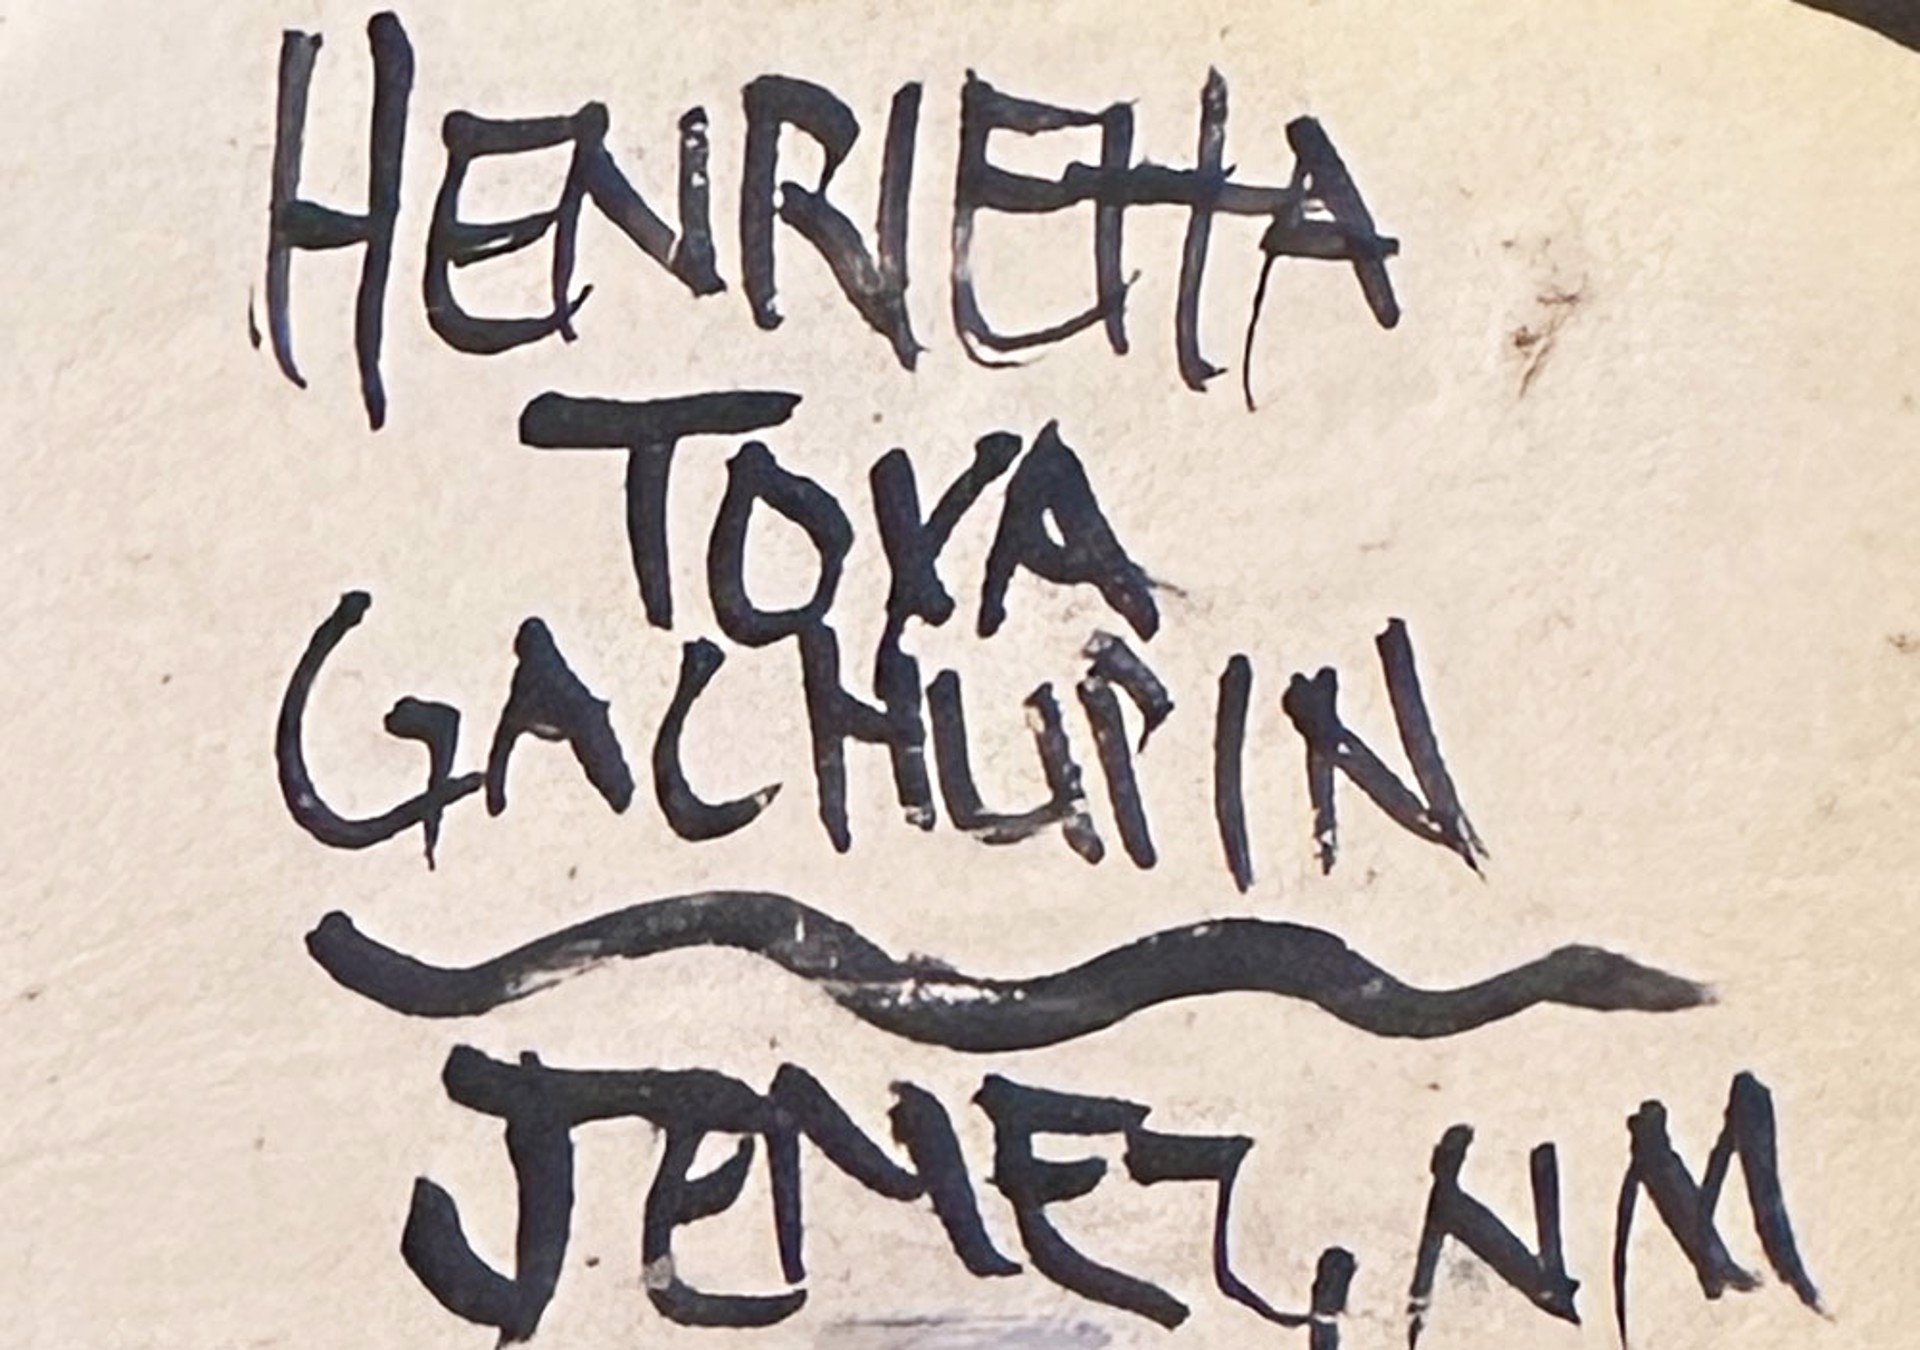 Storyteller 2 by Henrietta Toya Gachupin